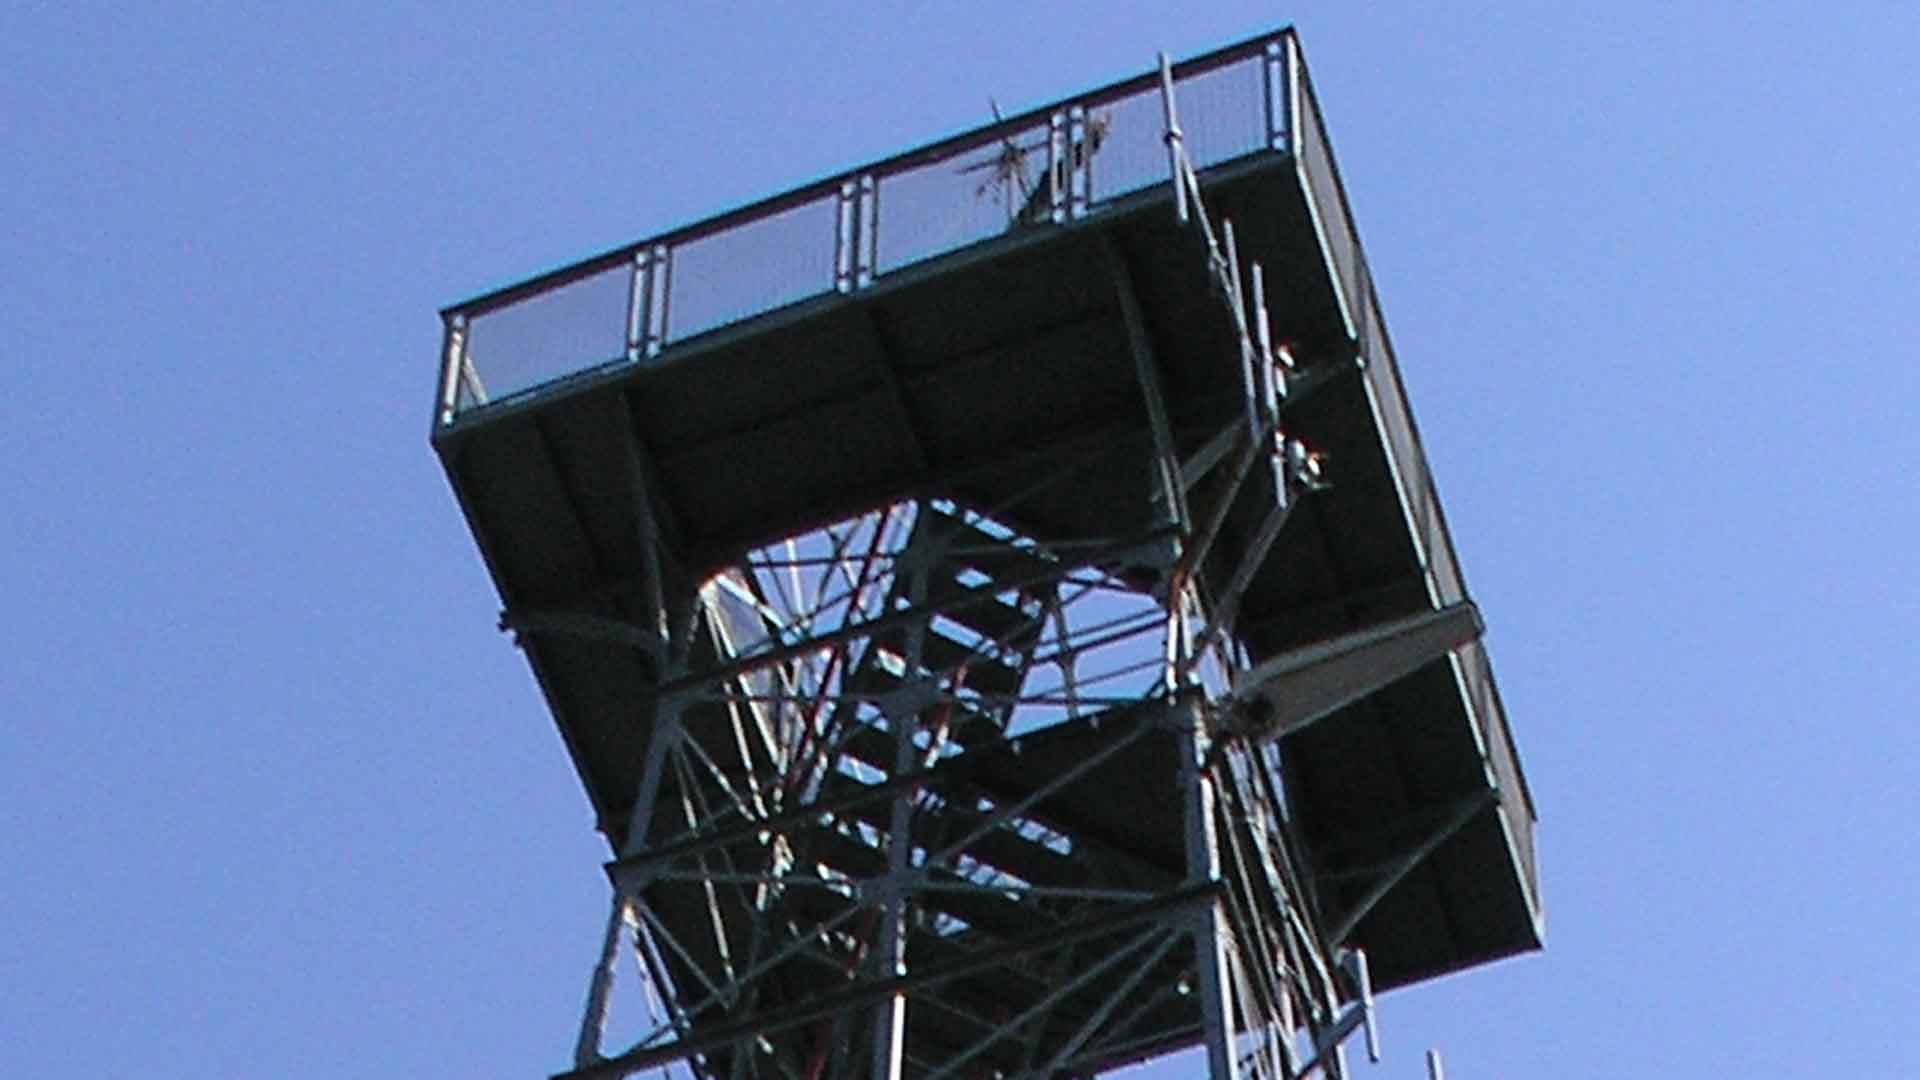 Stahlrüstung des Aussichtsturms Kuckholzklippe bei Lerbach